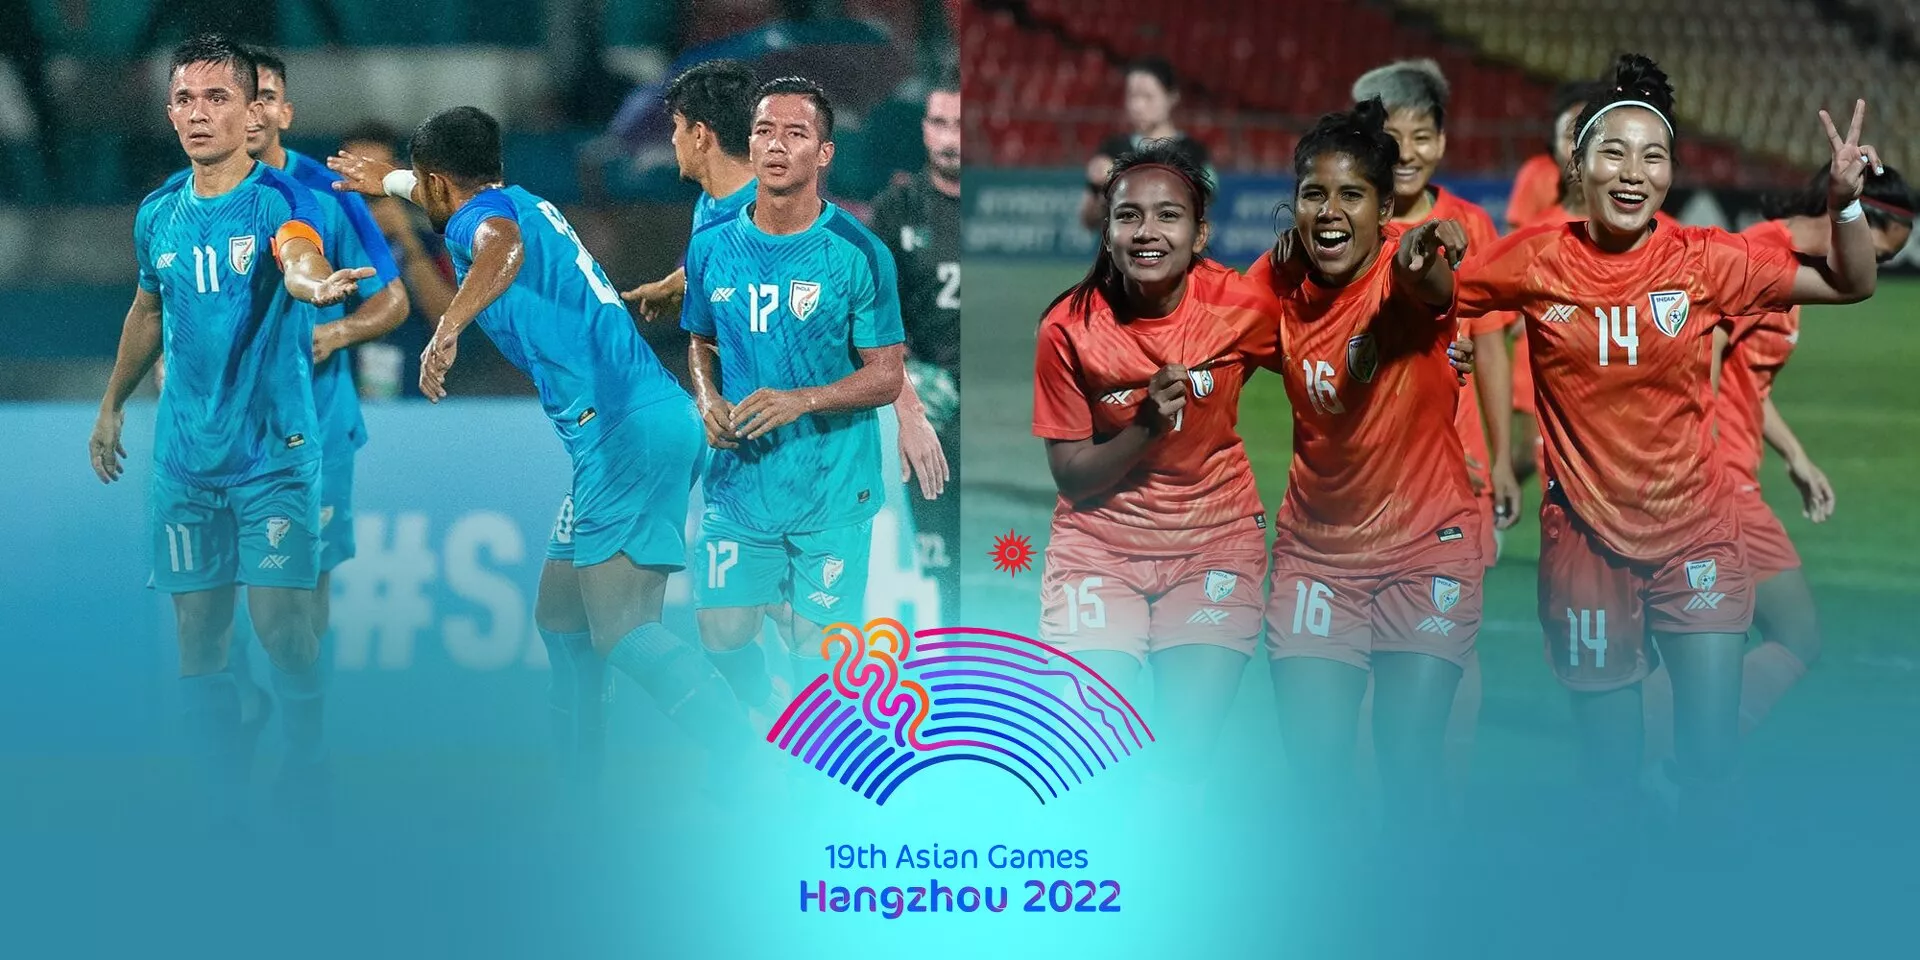 Asian Games (Football) Groups revealed for India men’s, women’s team